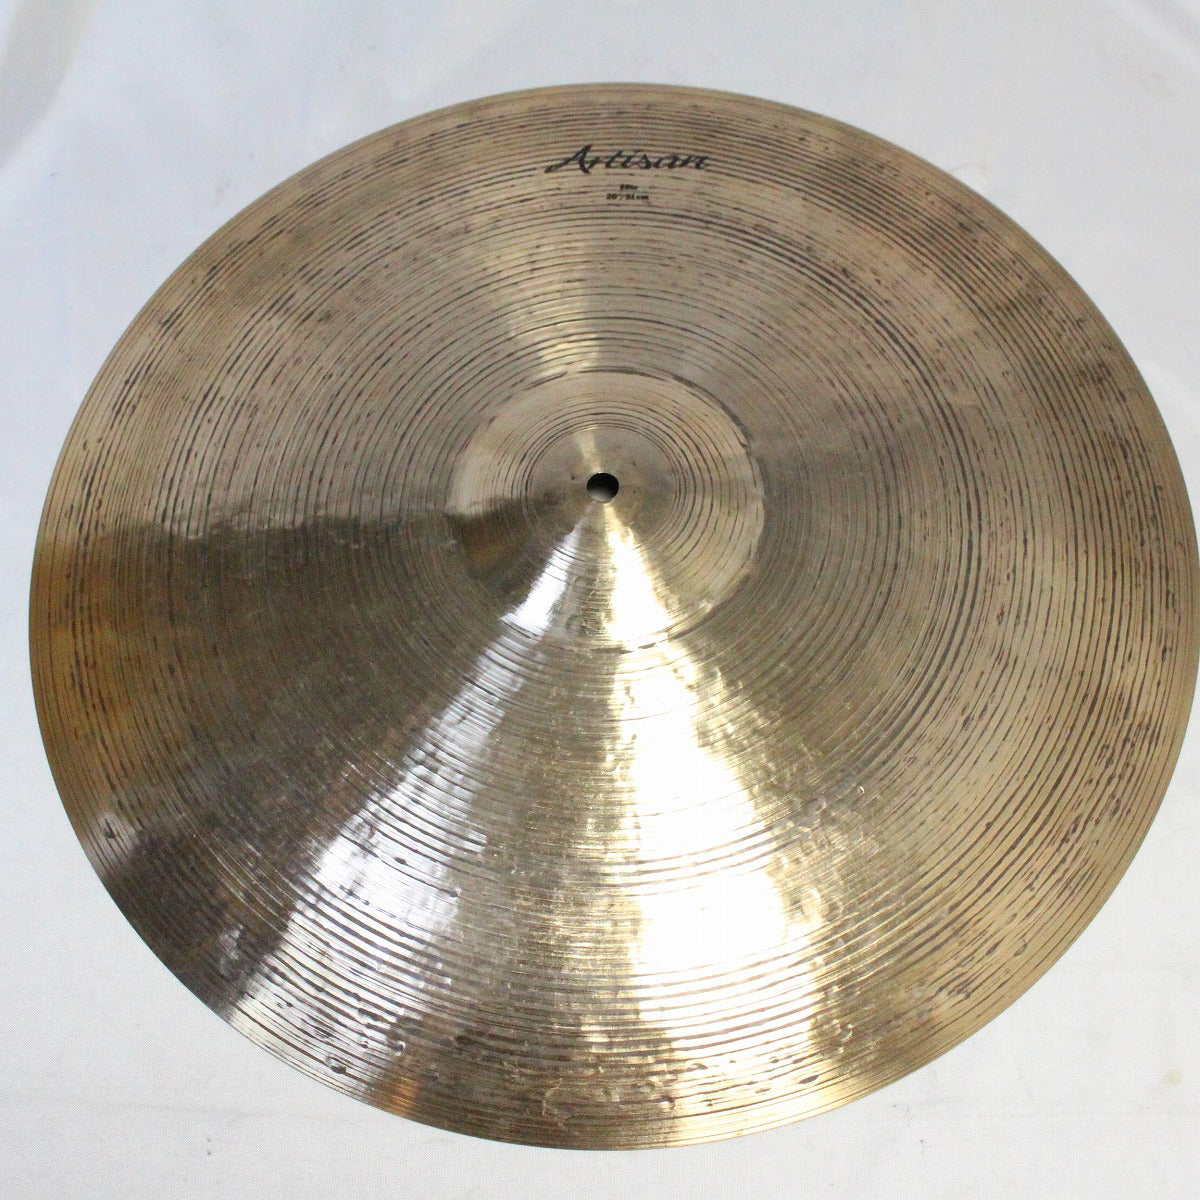 USED SABIAN / VL-20AER ARTISAN ELITE RIDE 20 1910g Sabian Artisan Elite Ride Cymbal [08]